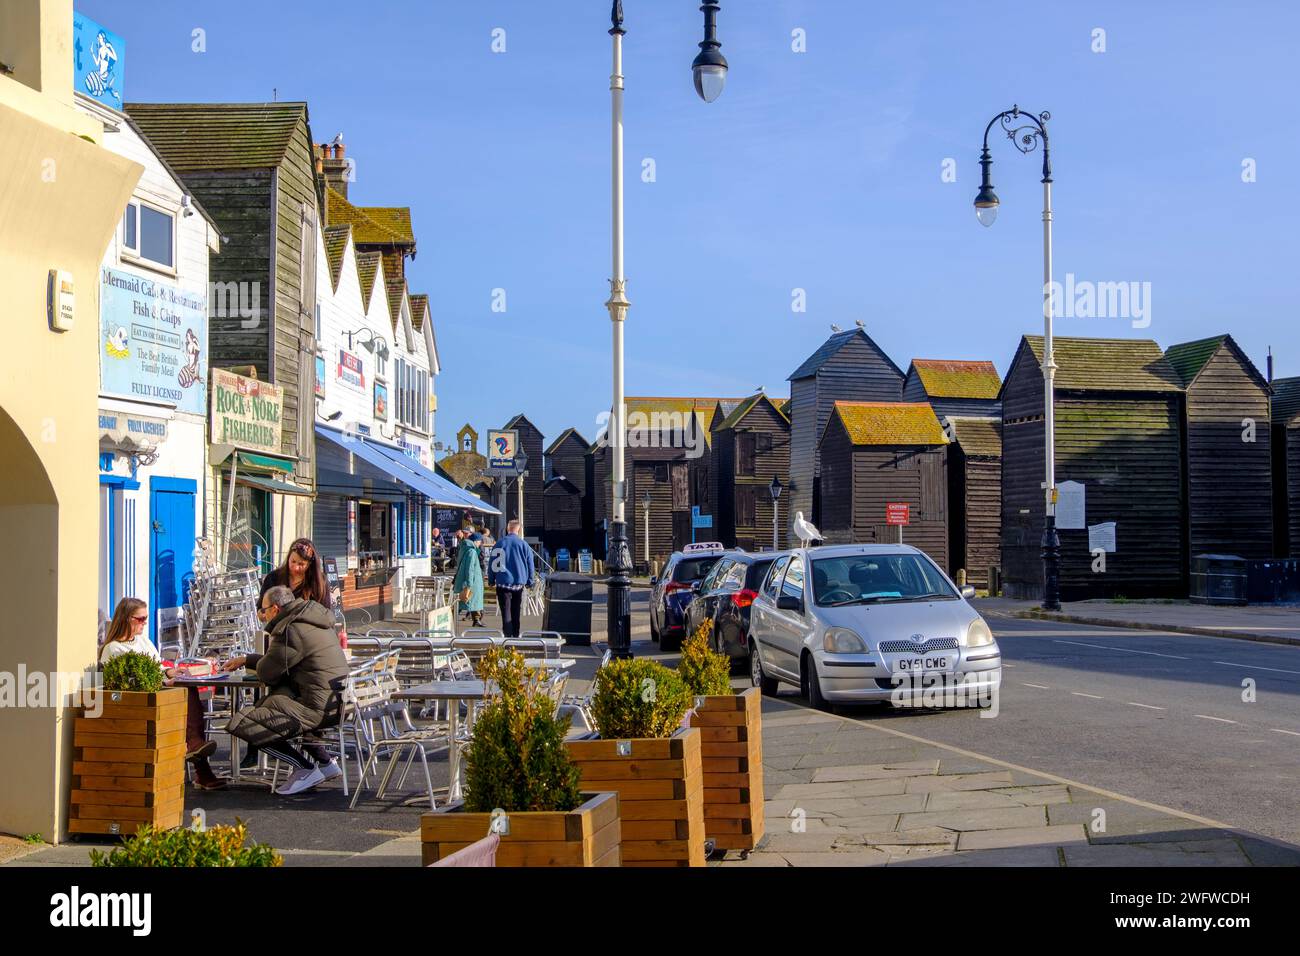 Cafés et pêcheurs's Net Huts sur Hastings Seafront, Rock-a-Nore Road, East Sussex, Royaume-Uni Banque D'Images